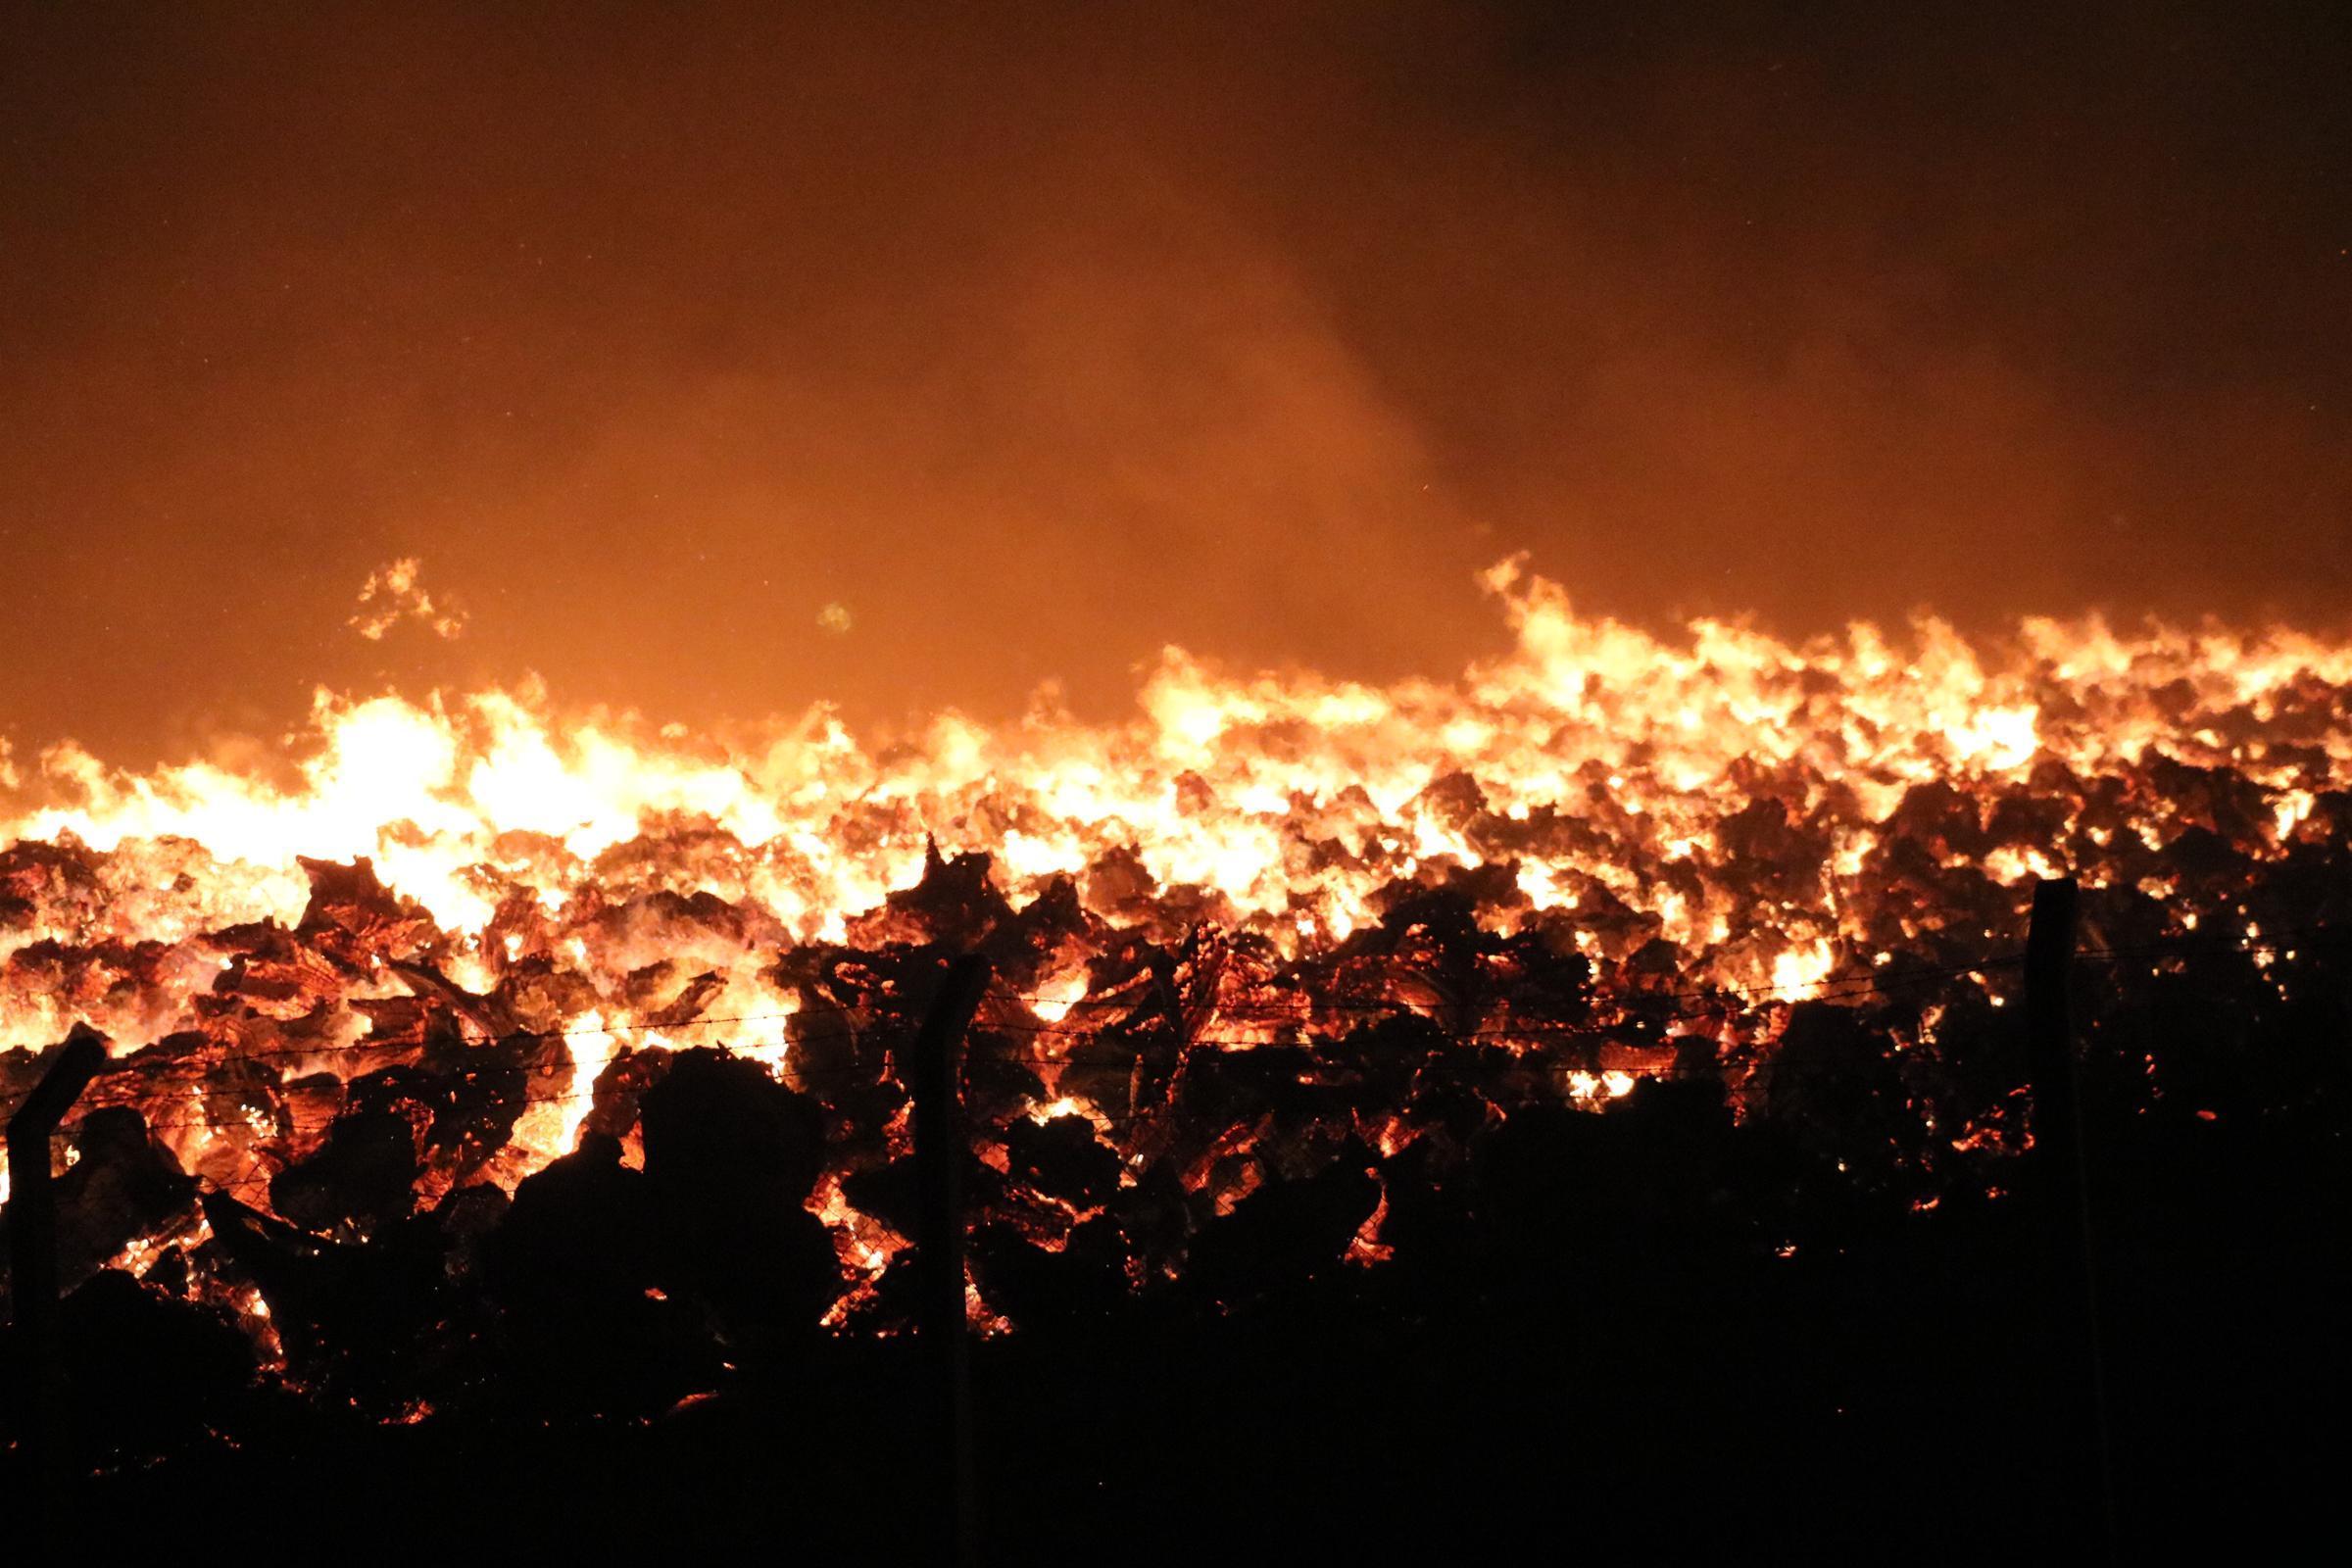 Afyonkarahisarda biyoenerji tesisi bahçesindeki ağaç köklerinde yangın çıktı